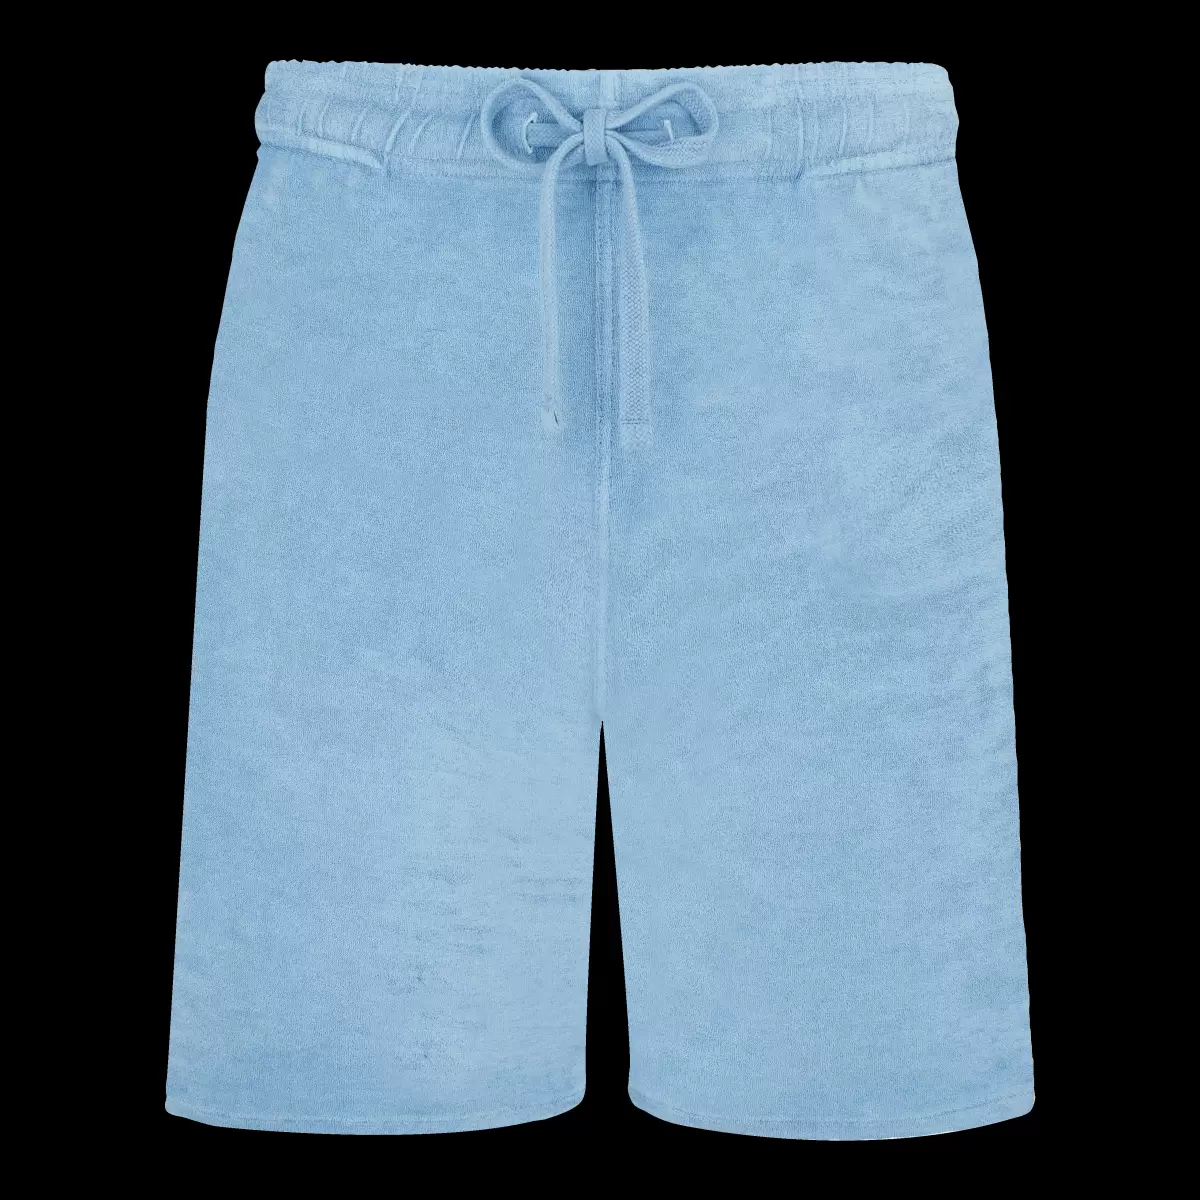 Produkt Shorts Herren Vilebrequin Source / Blau Solid Bermudashorts Aus Frottee Mit Mineralfarbstoff Für Herren - 3